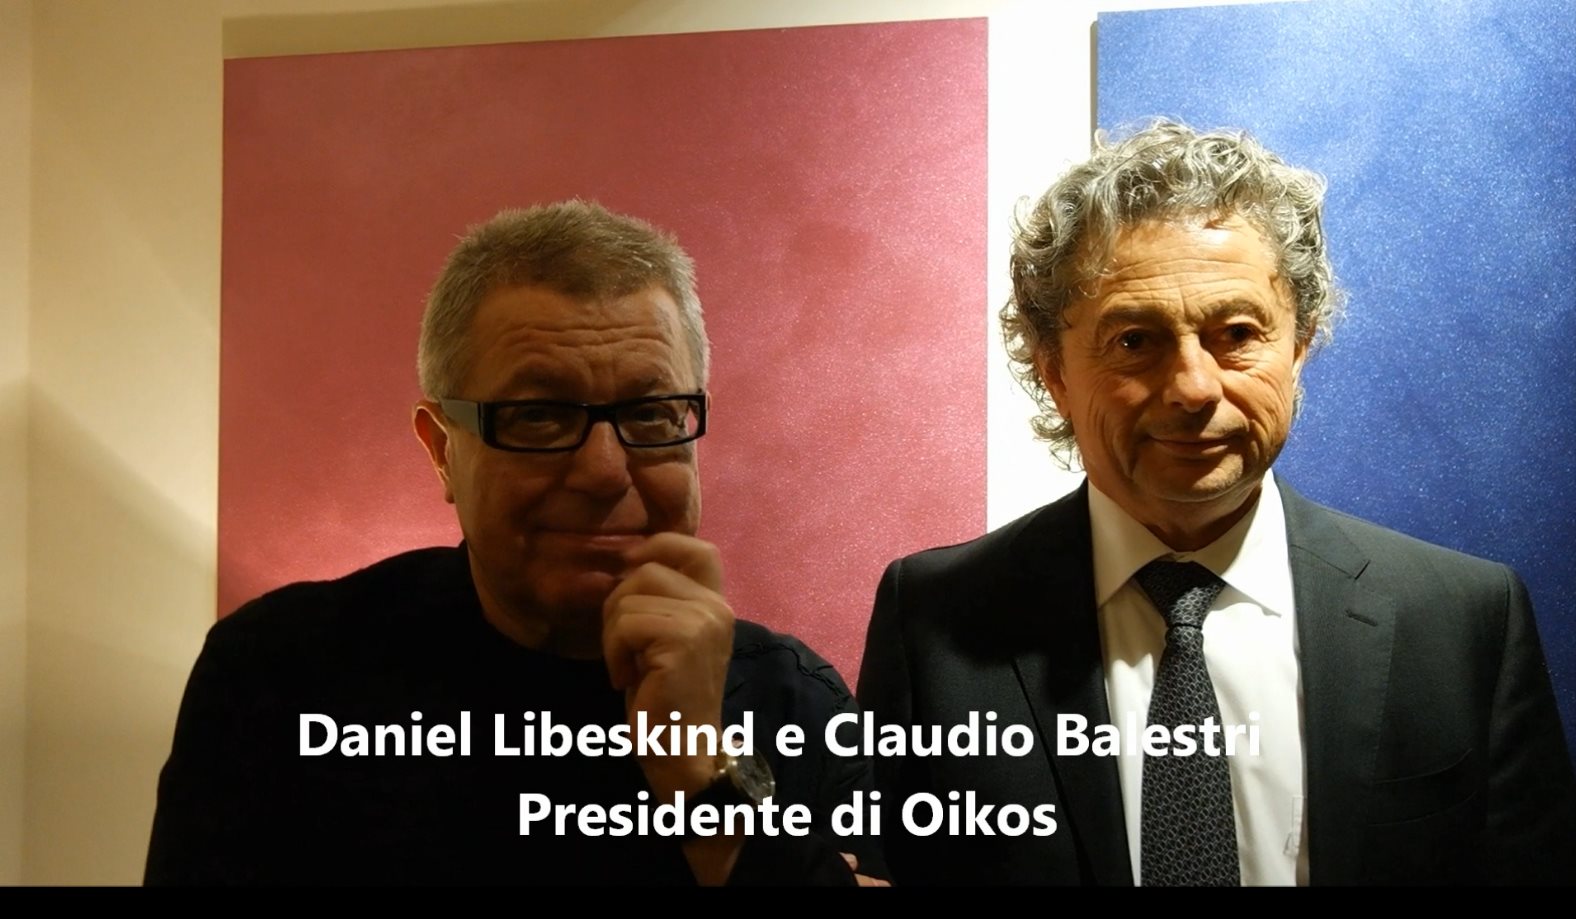 Fuorisalone 2016 Milano: intervista a Daniel Libeskind, la nuova collezione colore LxO